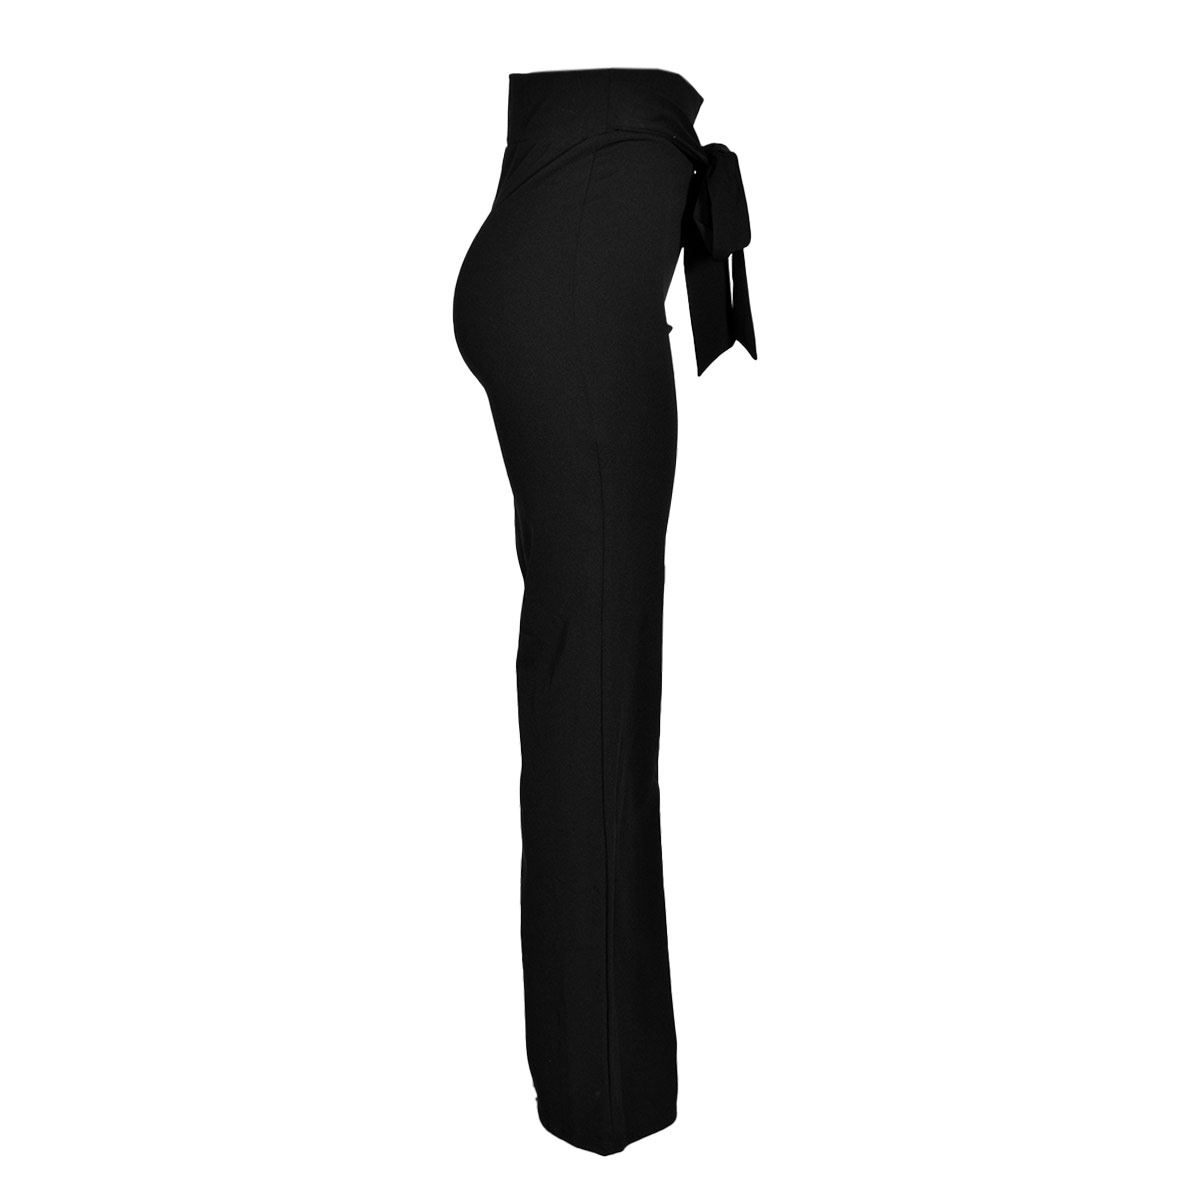 Pantalón Pretina Ancha Philosophy Jr talla mediana color negro modelo  lv1055nch